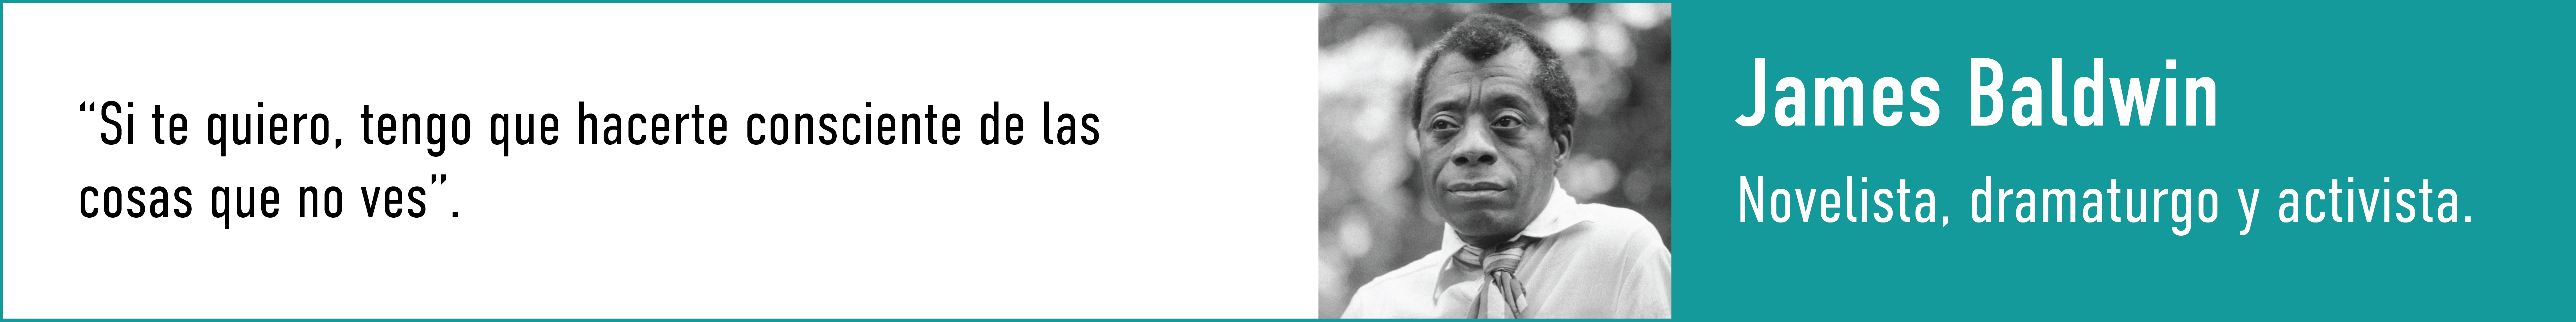 cita de James Baldwin, novelista, dramaturgo y activista. Si te quiero, tengo que hacerte consciente de las cosas que no ves.